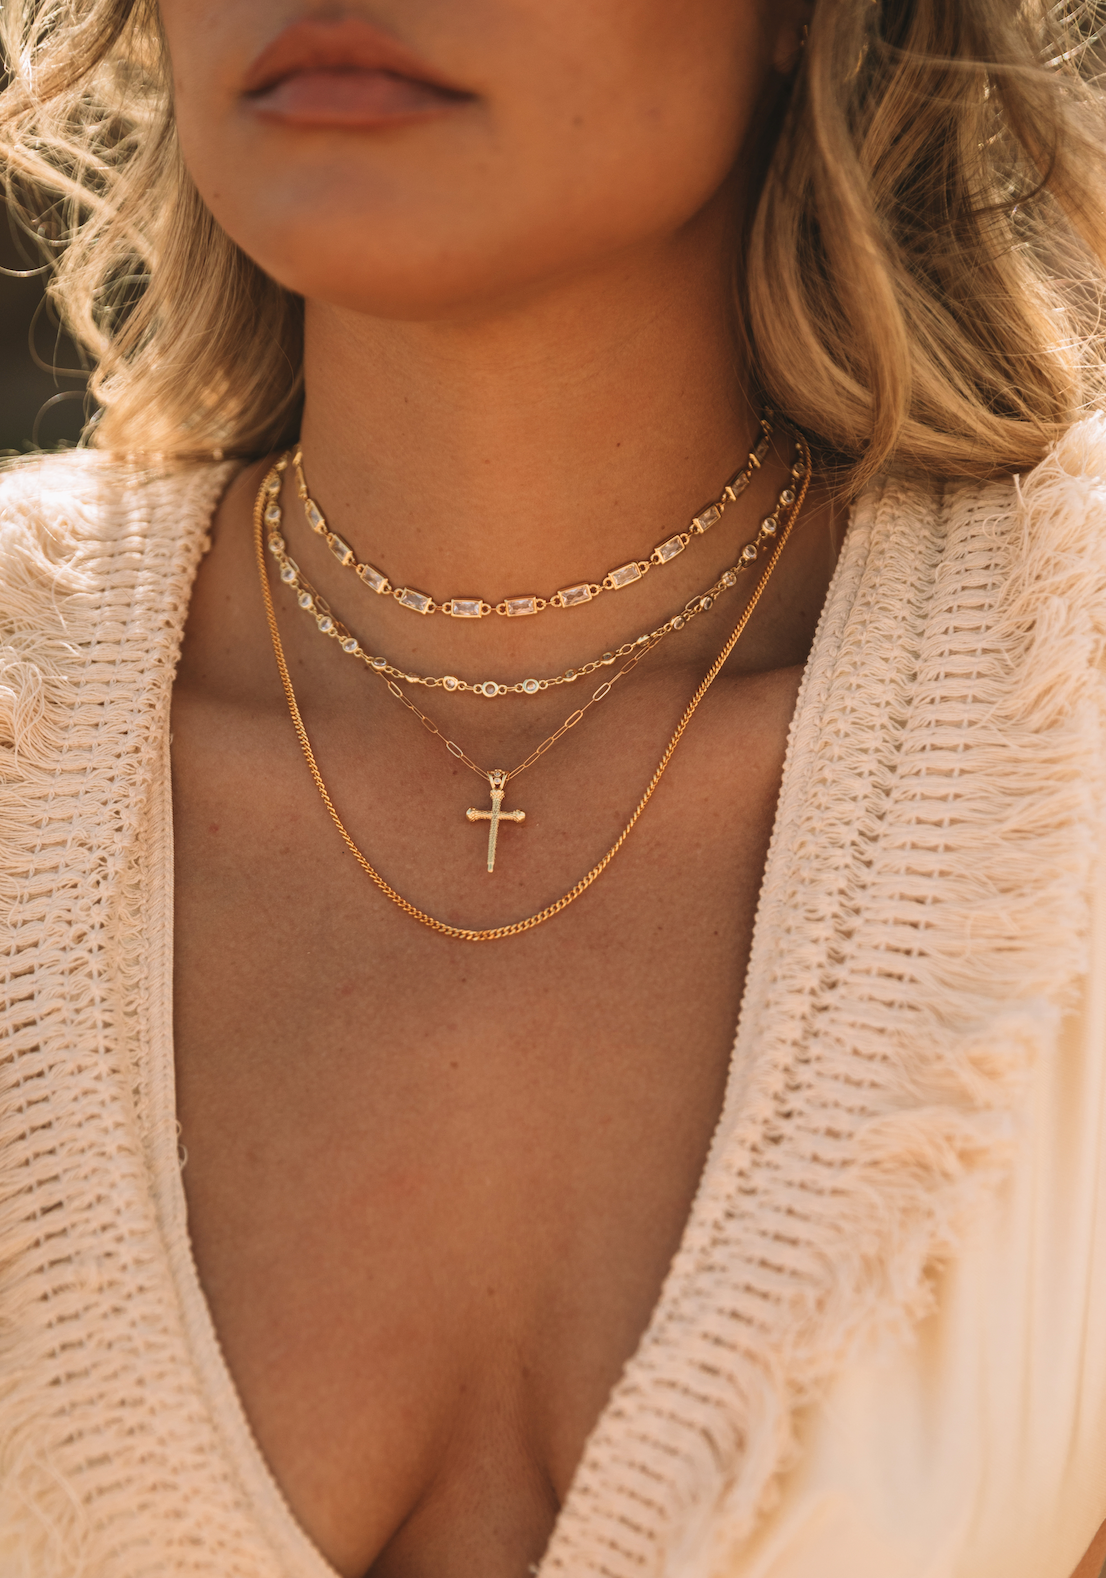 Buy Sideways Cross Choker Necklace 14K Solid Gold Women Online in India -  Etsy